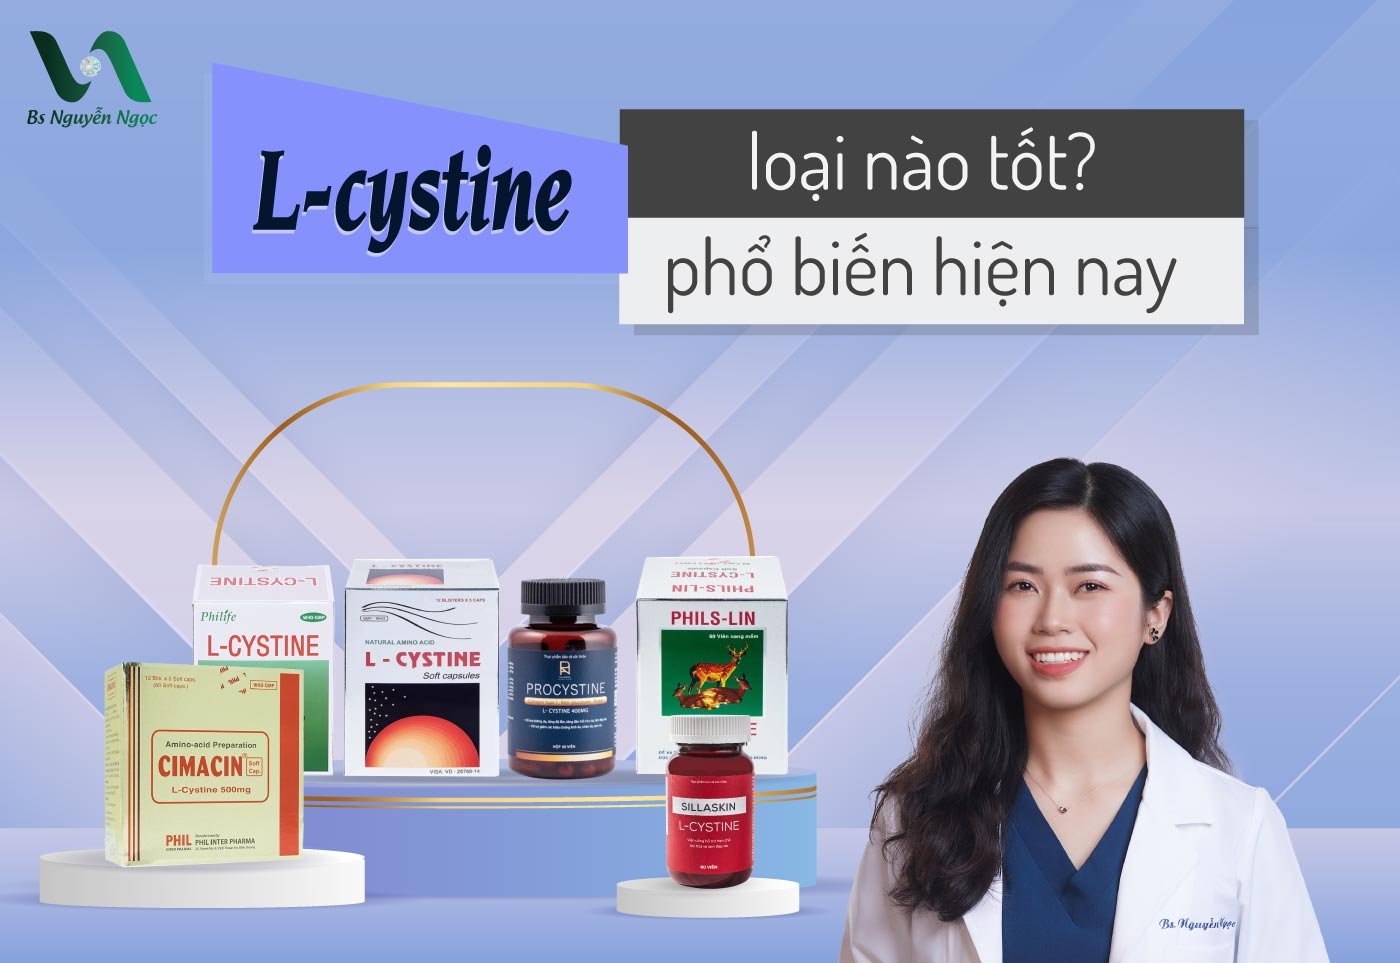 L-cystine loại nào tốt? 6 loại L-cystine phổ biến hiện nay